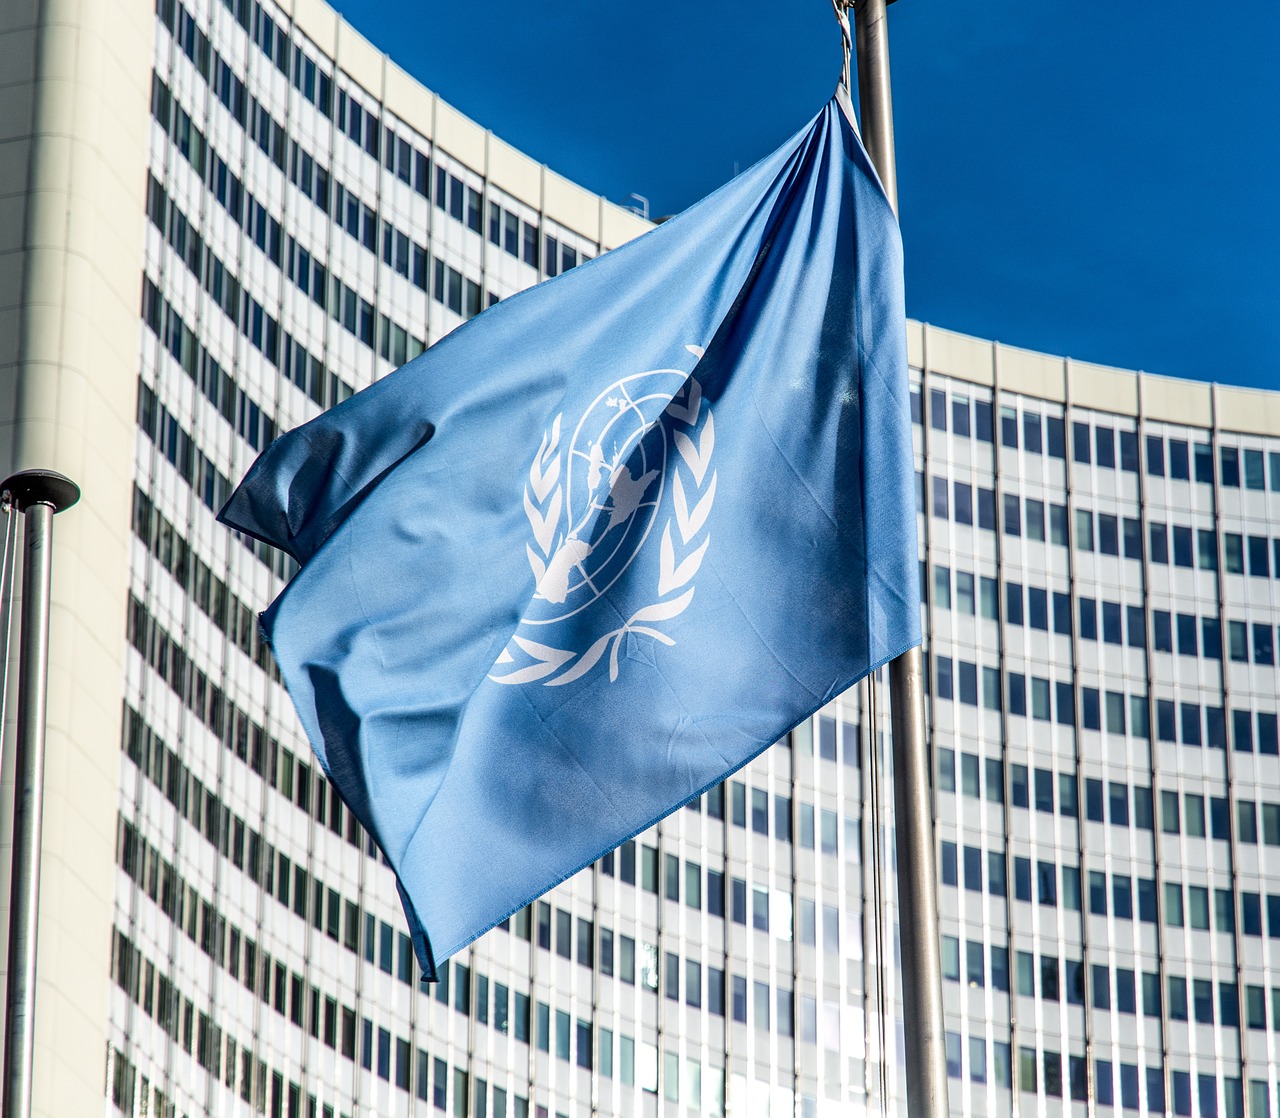 UN Flags Pixabay Public Domain